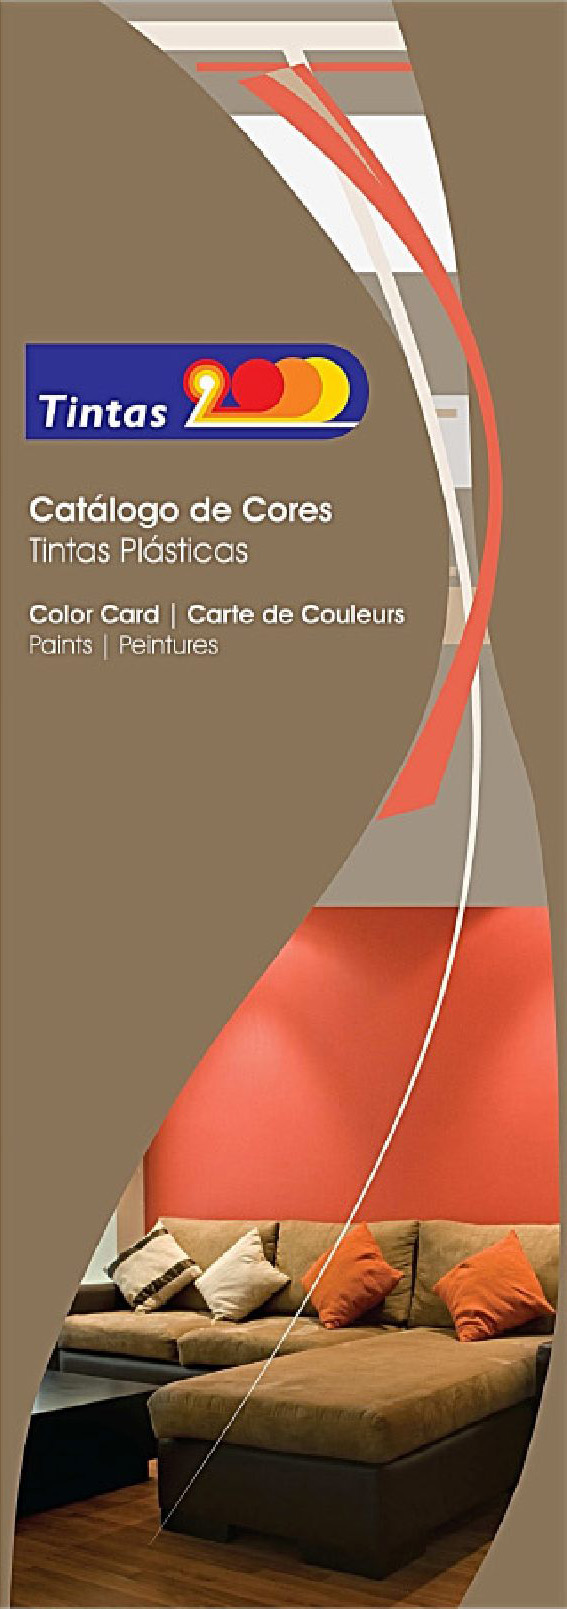 Tintas 2000 - Catálogo Cores